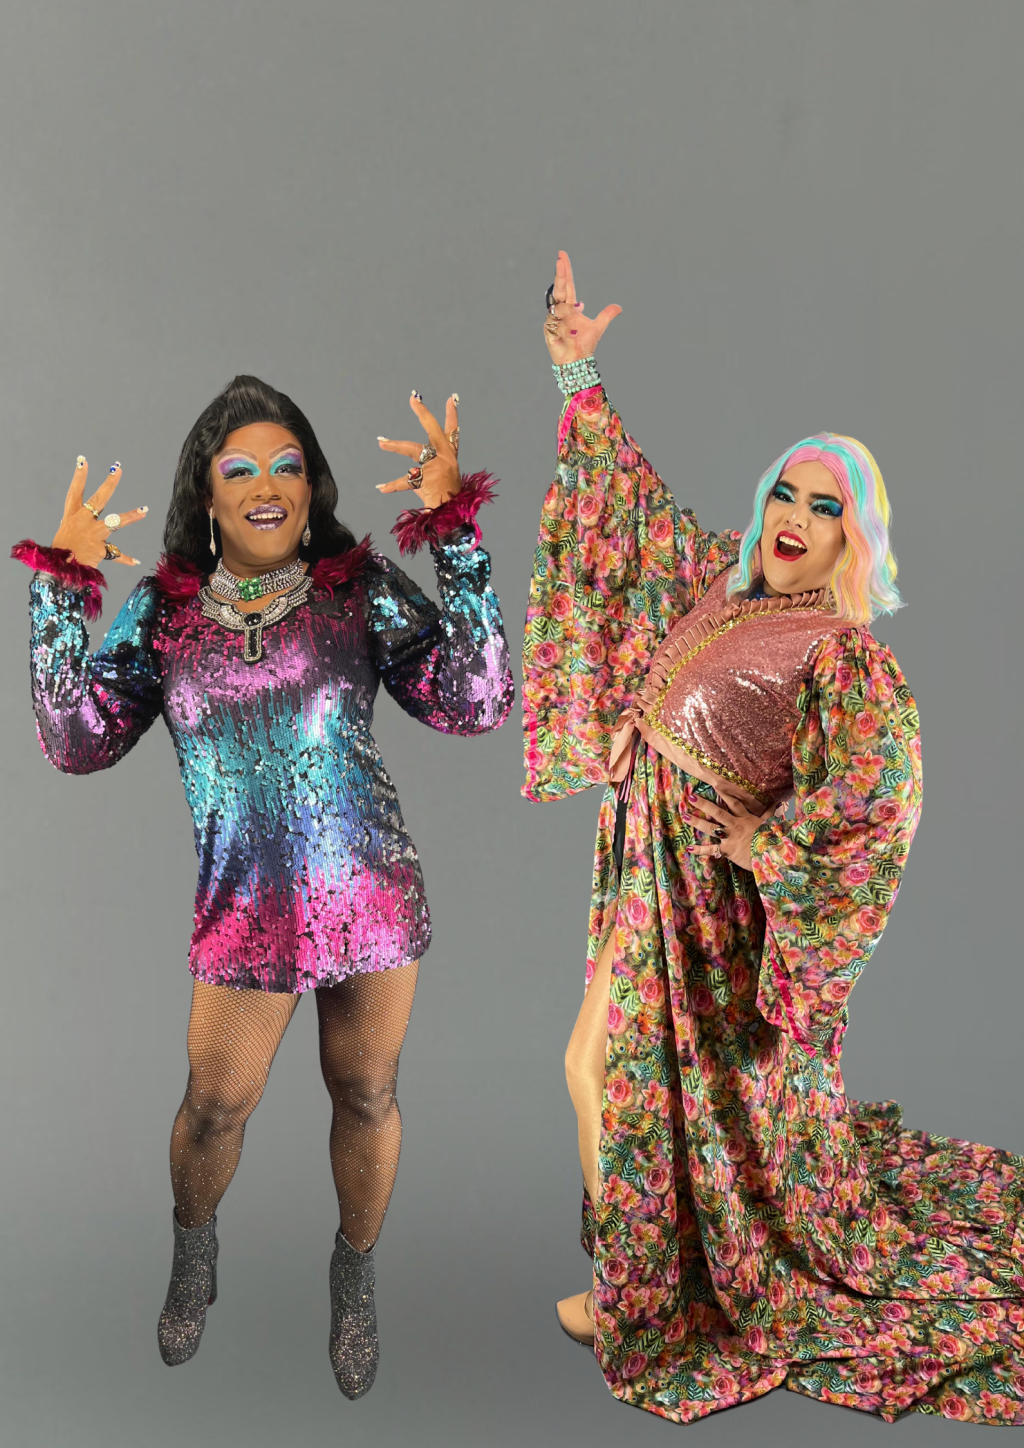 Duas drag queens estendem as mãos e posam sorridentes. A da esquerda é negra e veste vestido nas cores roxo, azul e rosa. A da direita é branca, com peruca branca e azulada, e veste peça florida.